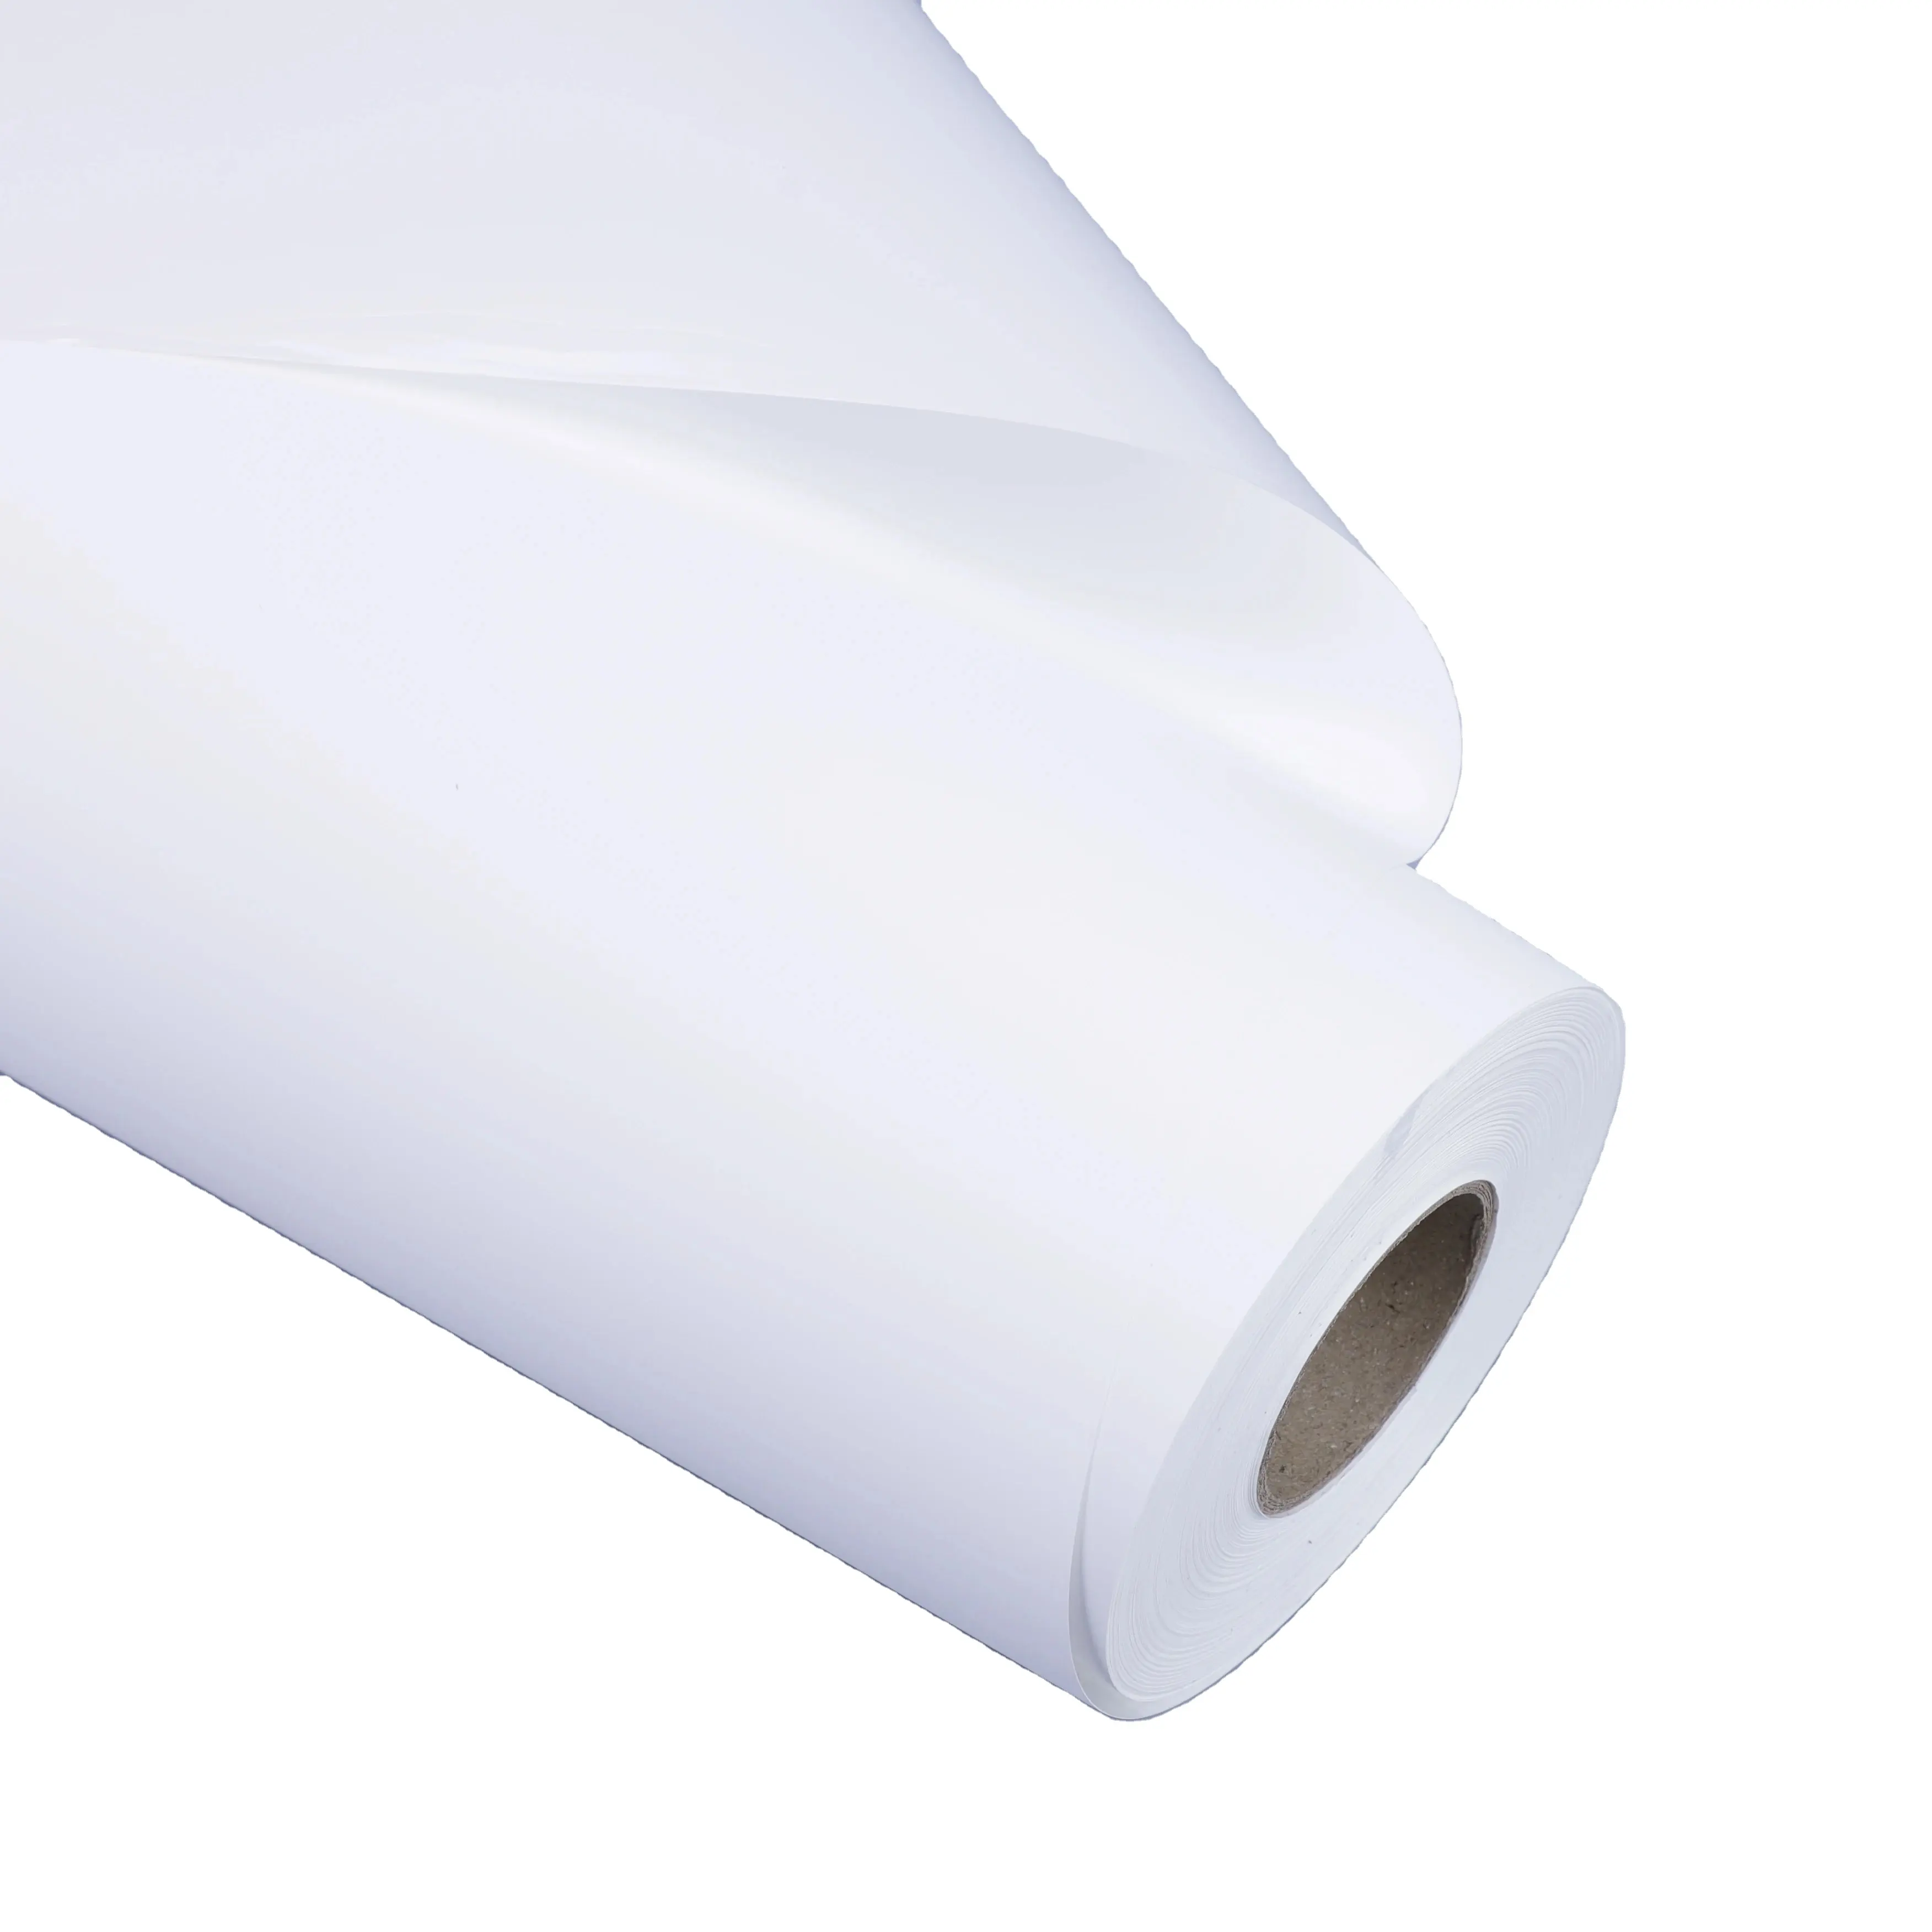 ม้วนกระดาษสังเคราะห์สีขาวมีกาวในตัวทำจากพีวีซีพิมพ์โปสเตอร์ได้